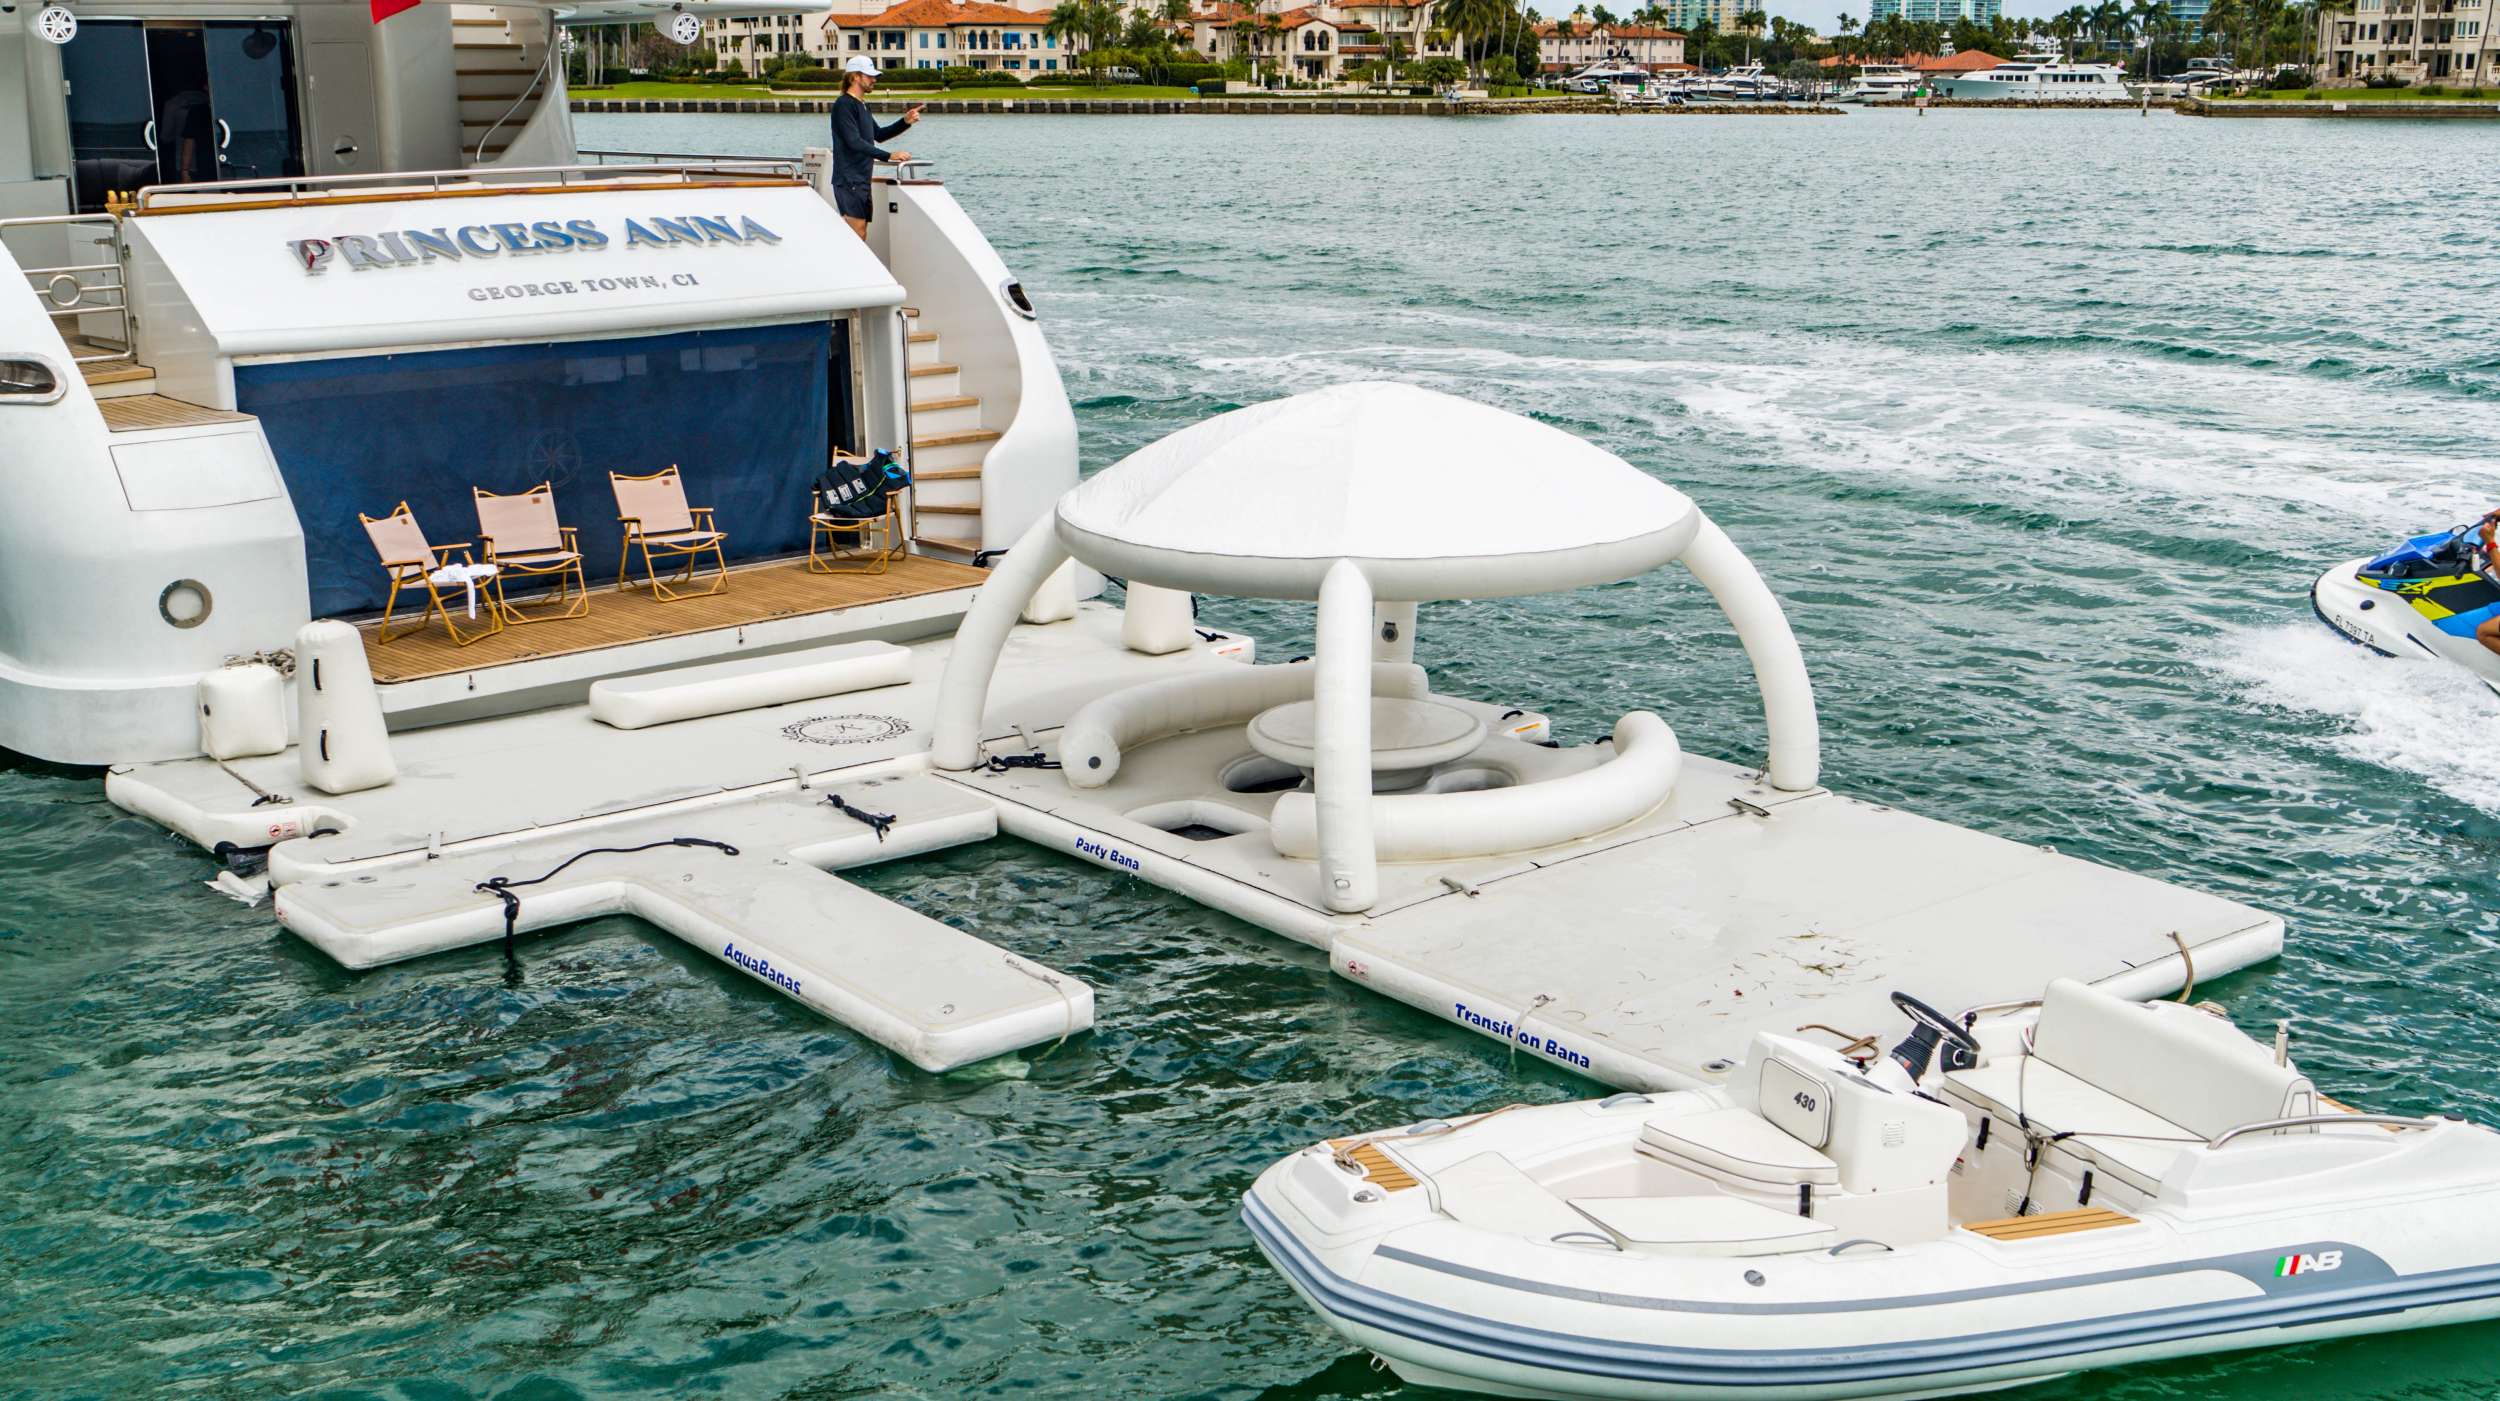 Princess Anna - Motor Boat Charter USA & Boat hire in Florida & Bahamas 2